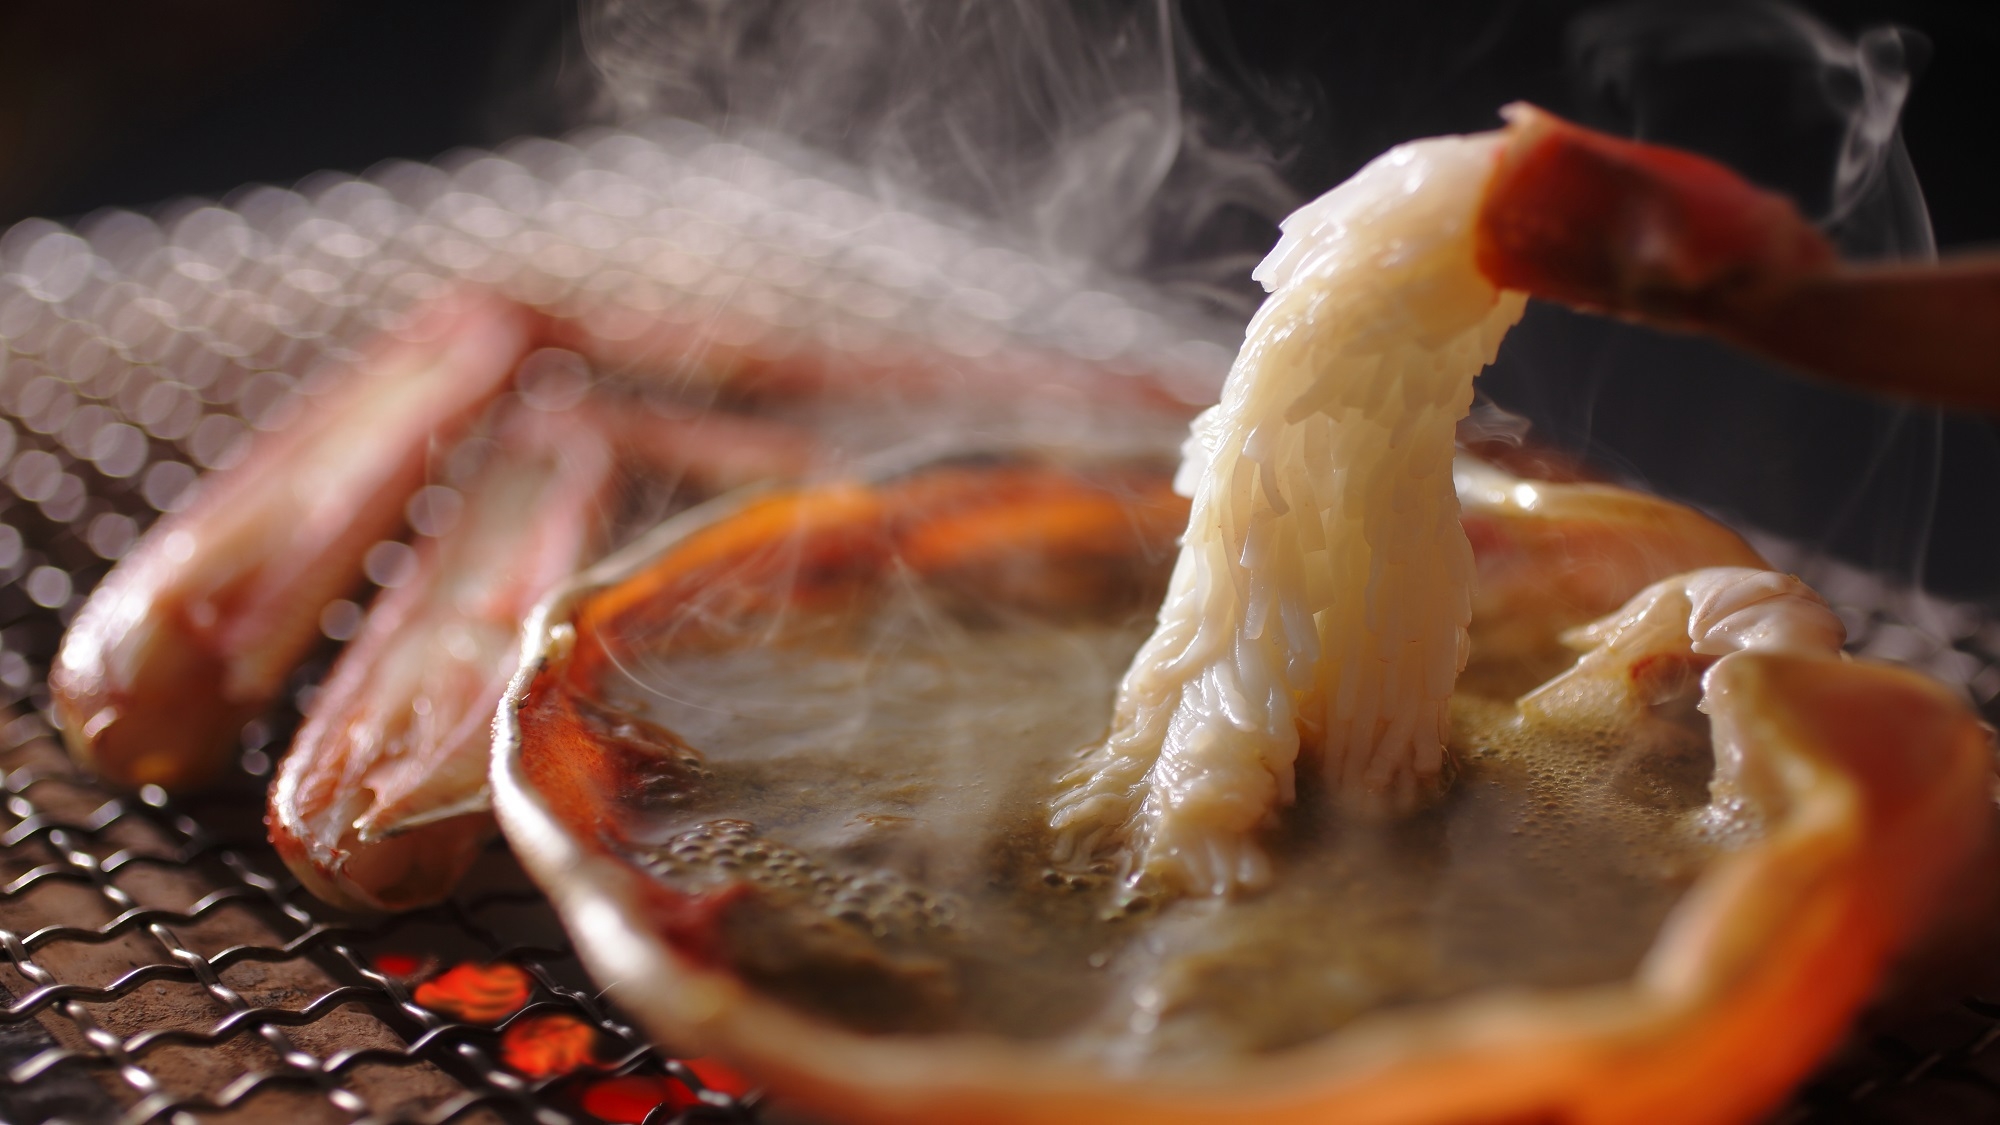 丹後の究極グルメ「地蟹満喫」【名物料理】ご贔屓様のご要望を受け通年でお楽しみ頂けるようになりました